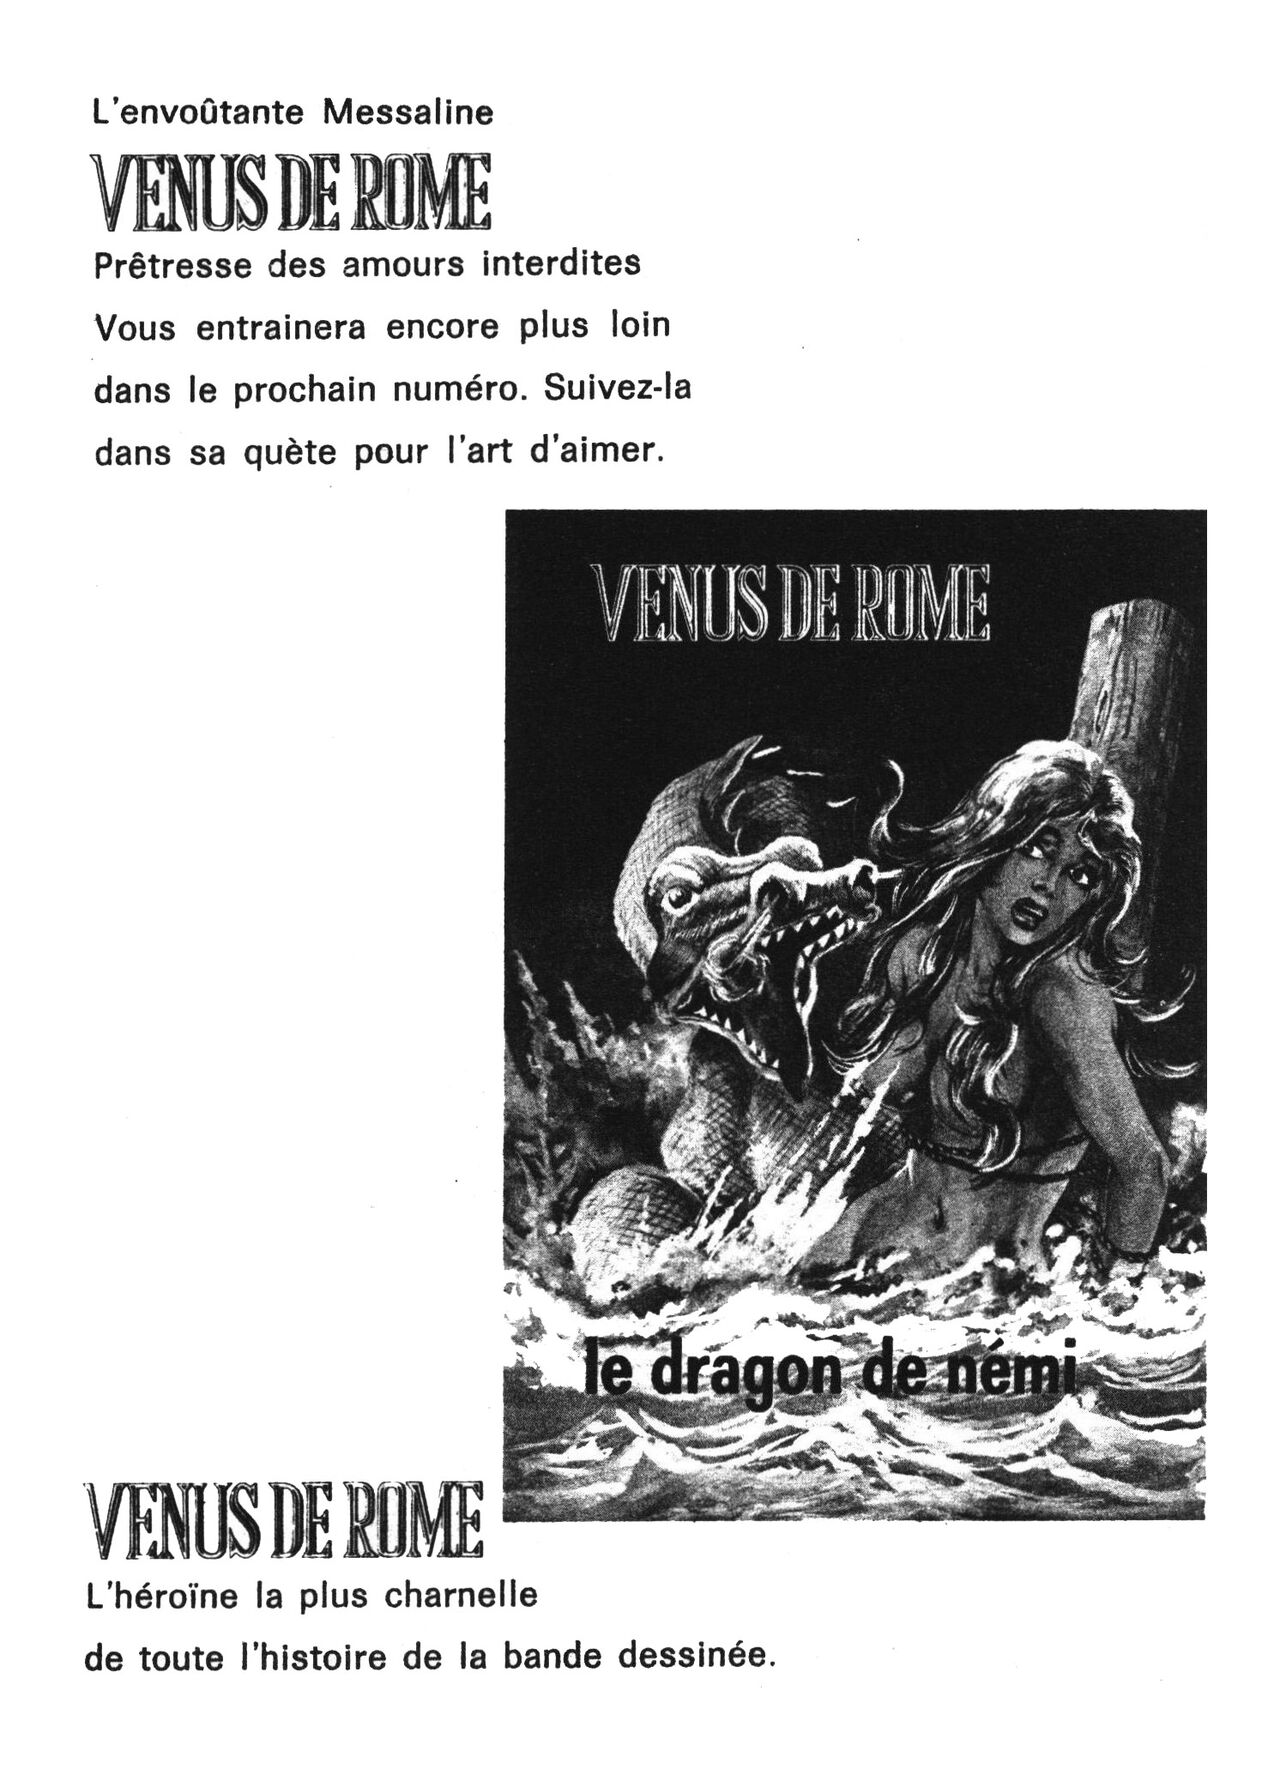 Venus de Rome 002 - La ceinture de chasteté numero d'image 129